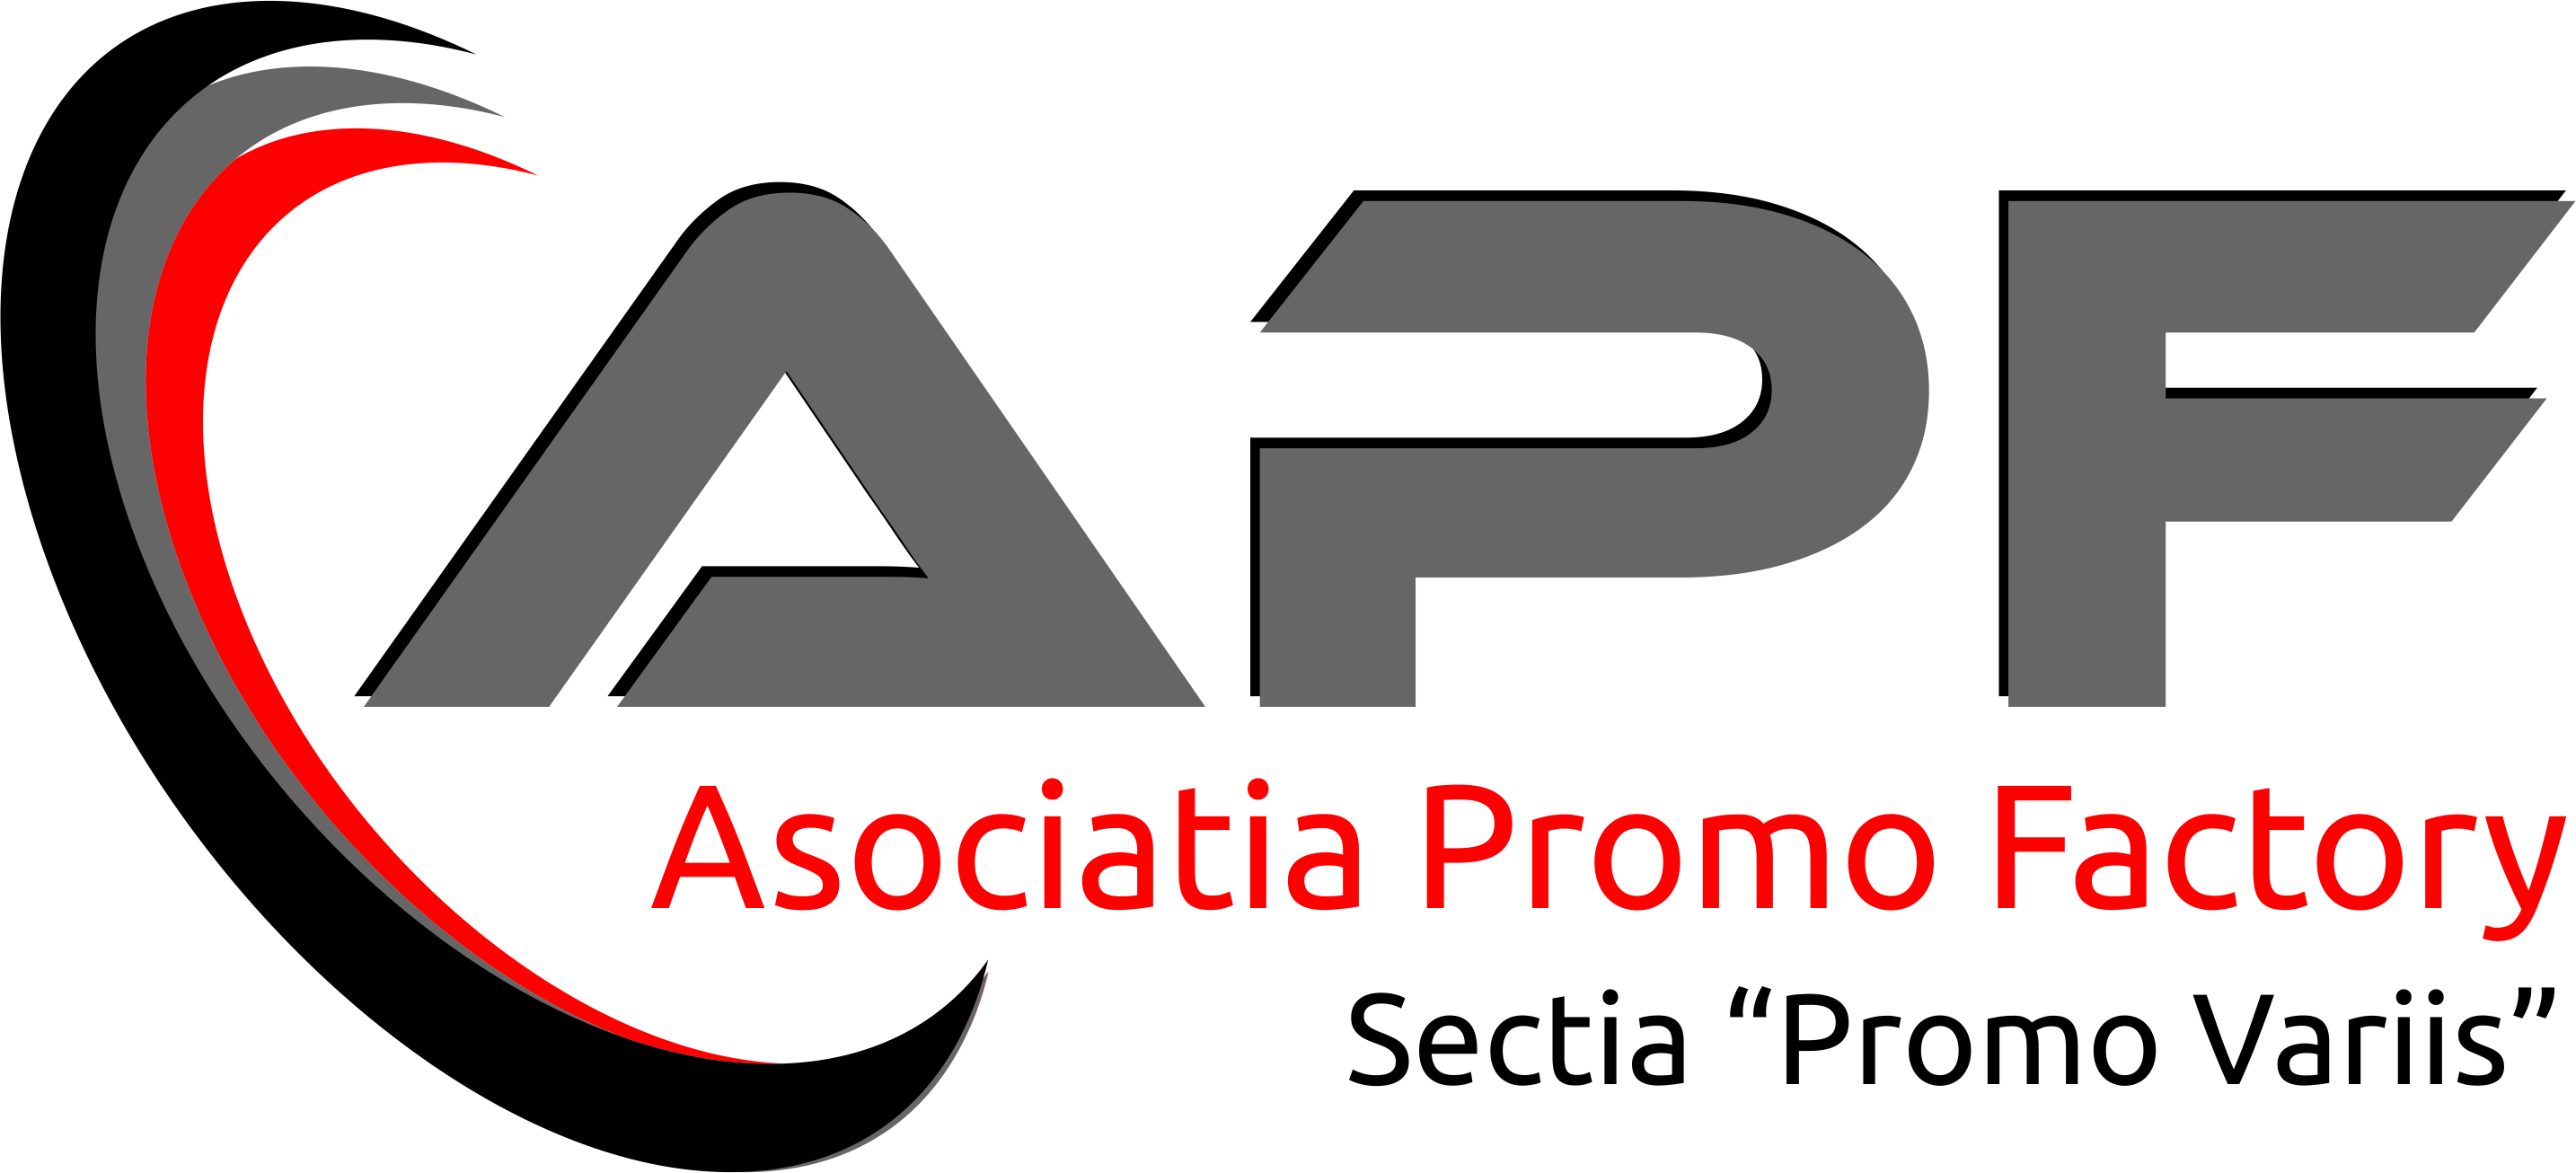 Asociatia Promo Factory logo